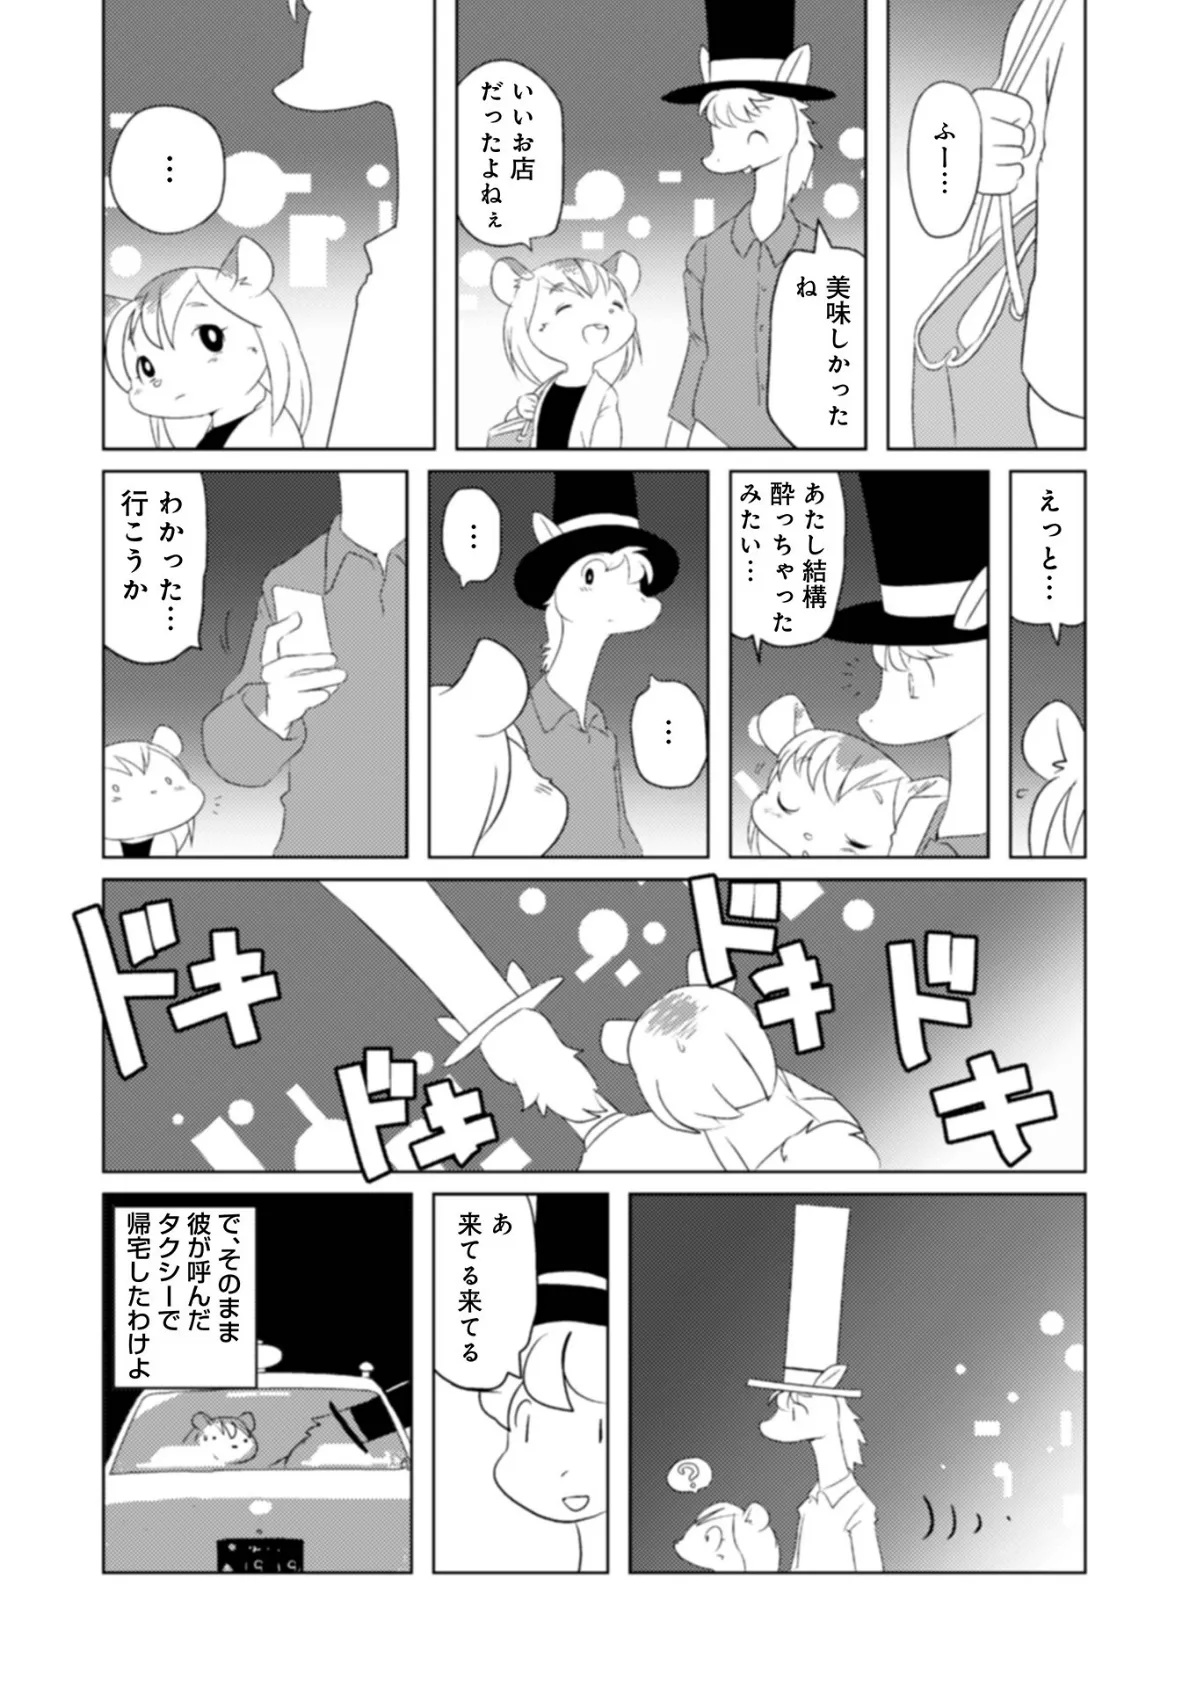 魔界探偵サバトくん第1巻 28ページ